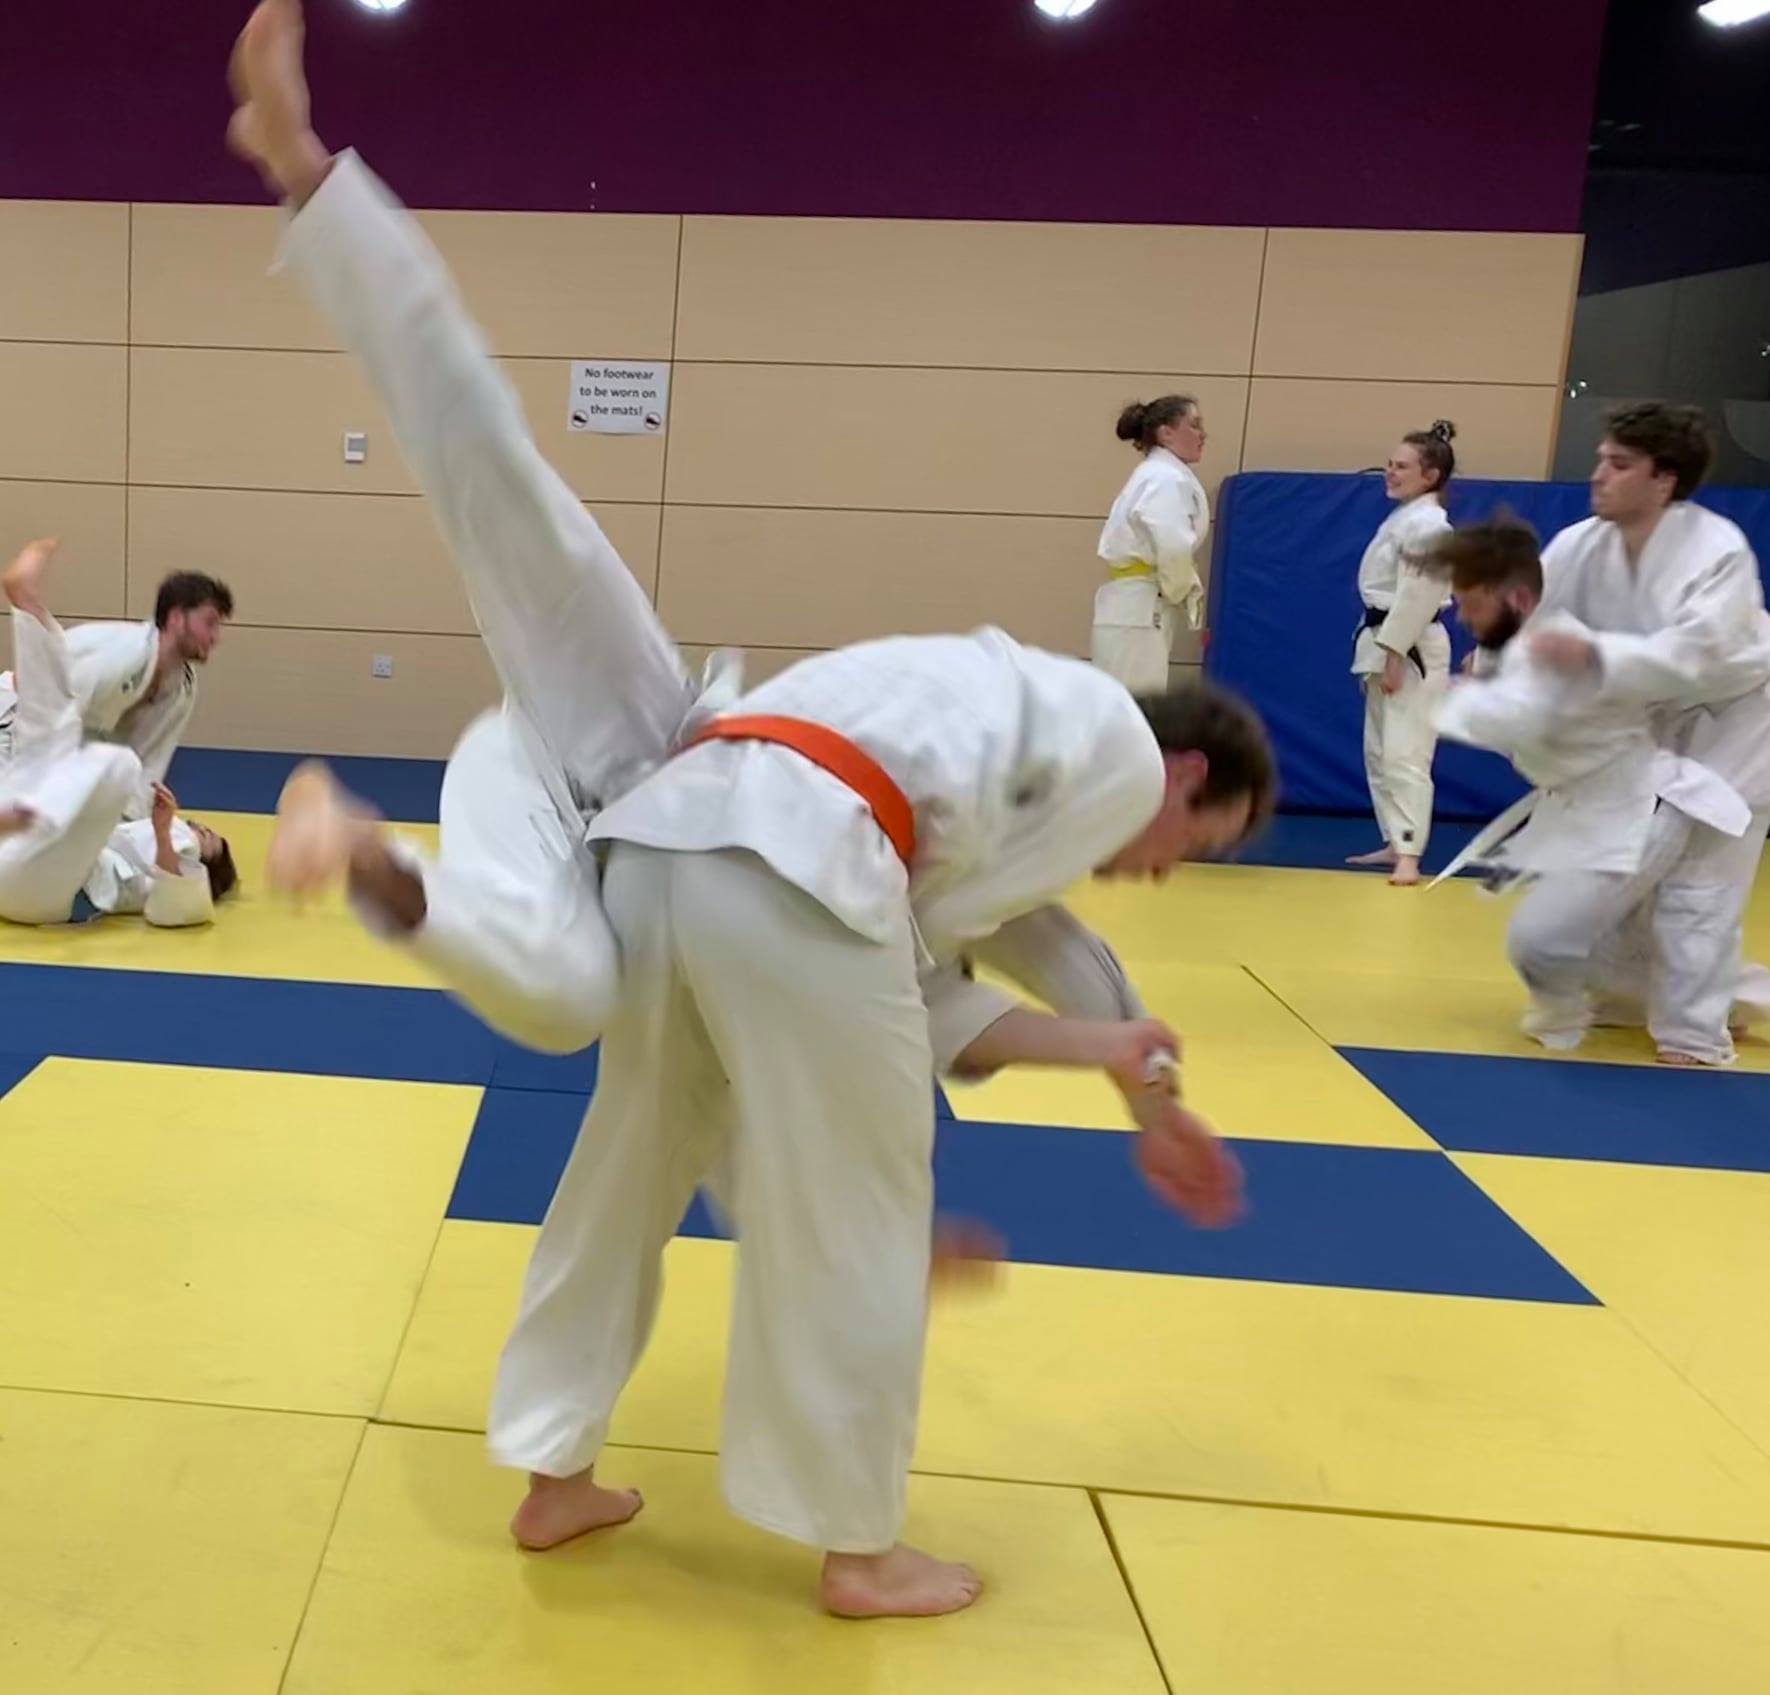 Judo grappling